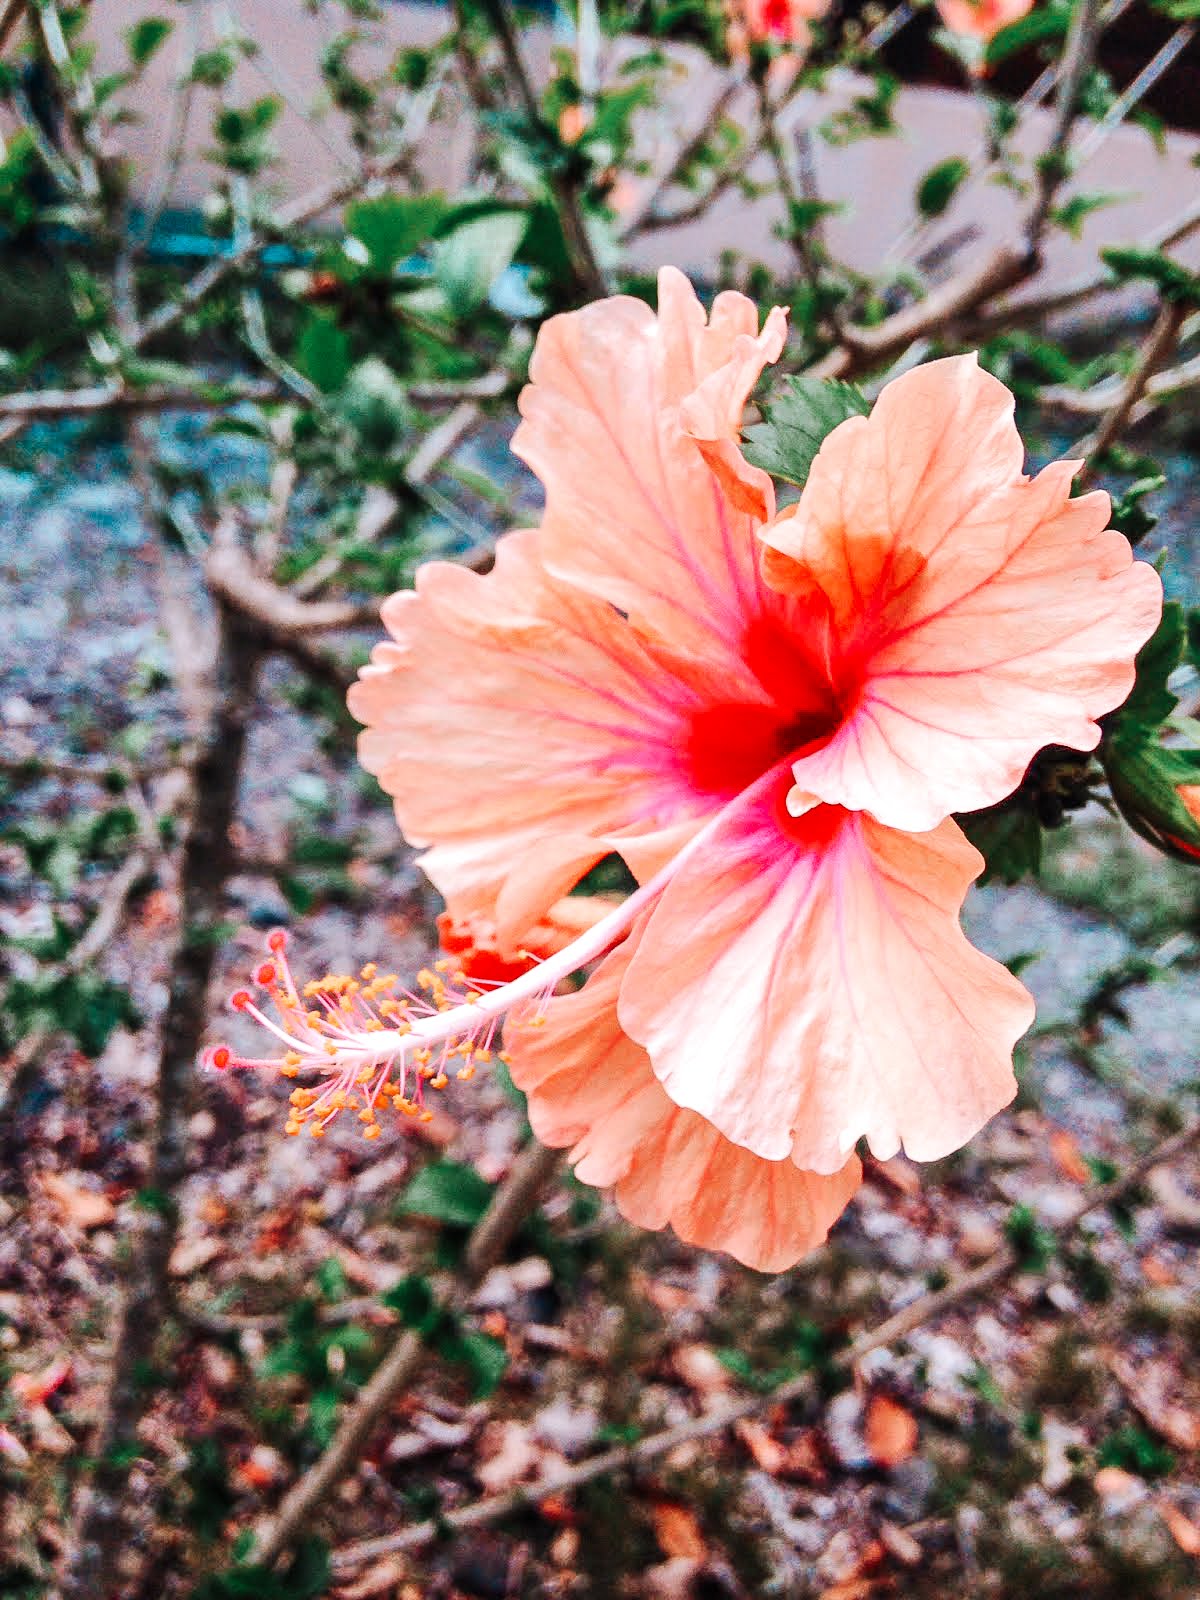 hibiscus oranger et rose spécificité de la faune et la flore de la martinique